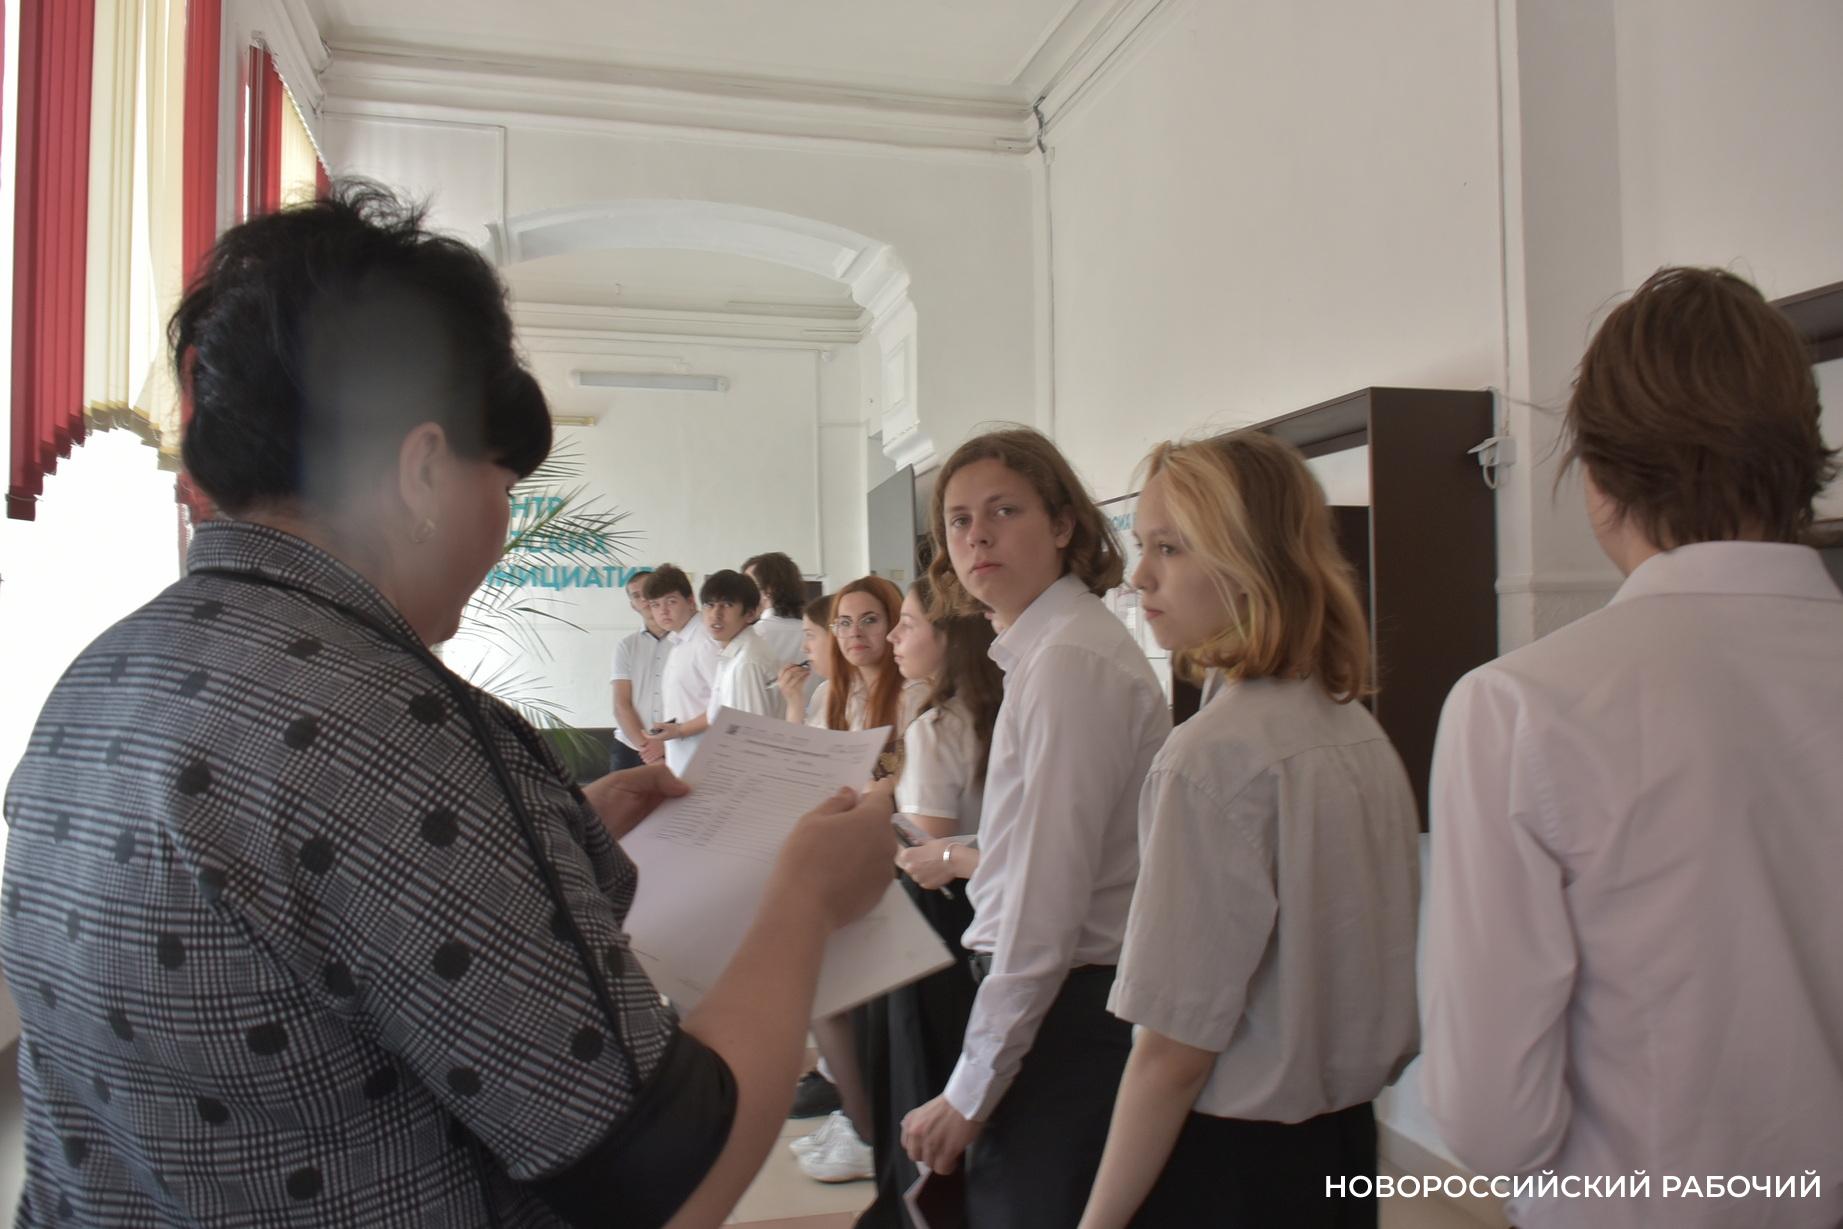 В Новороссийске сегодня сдали пробный экзамен по русскому языку, «билеты» распечатывали по-новому